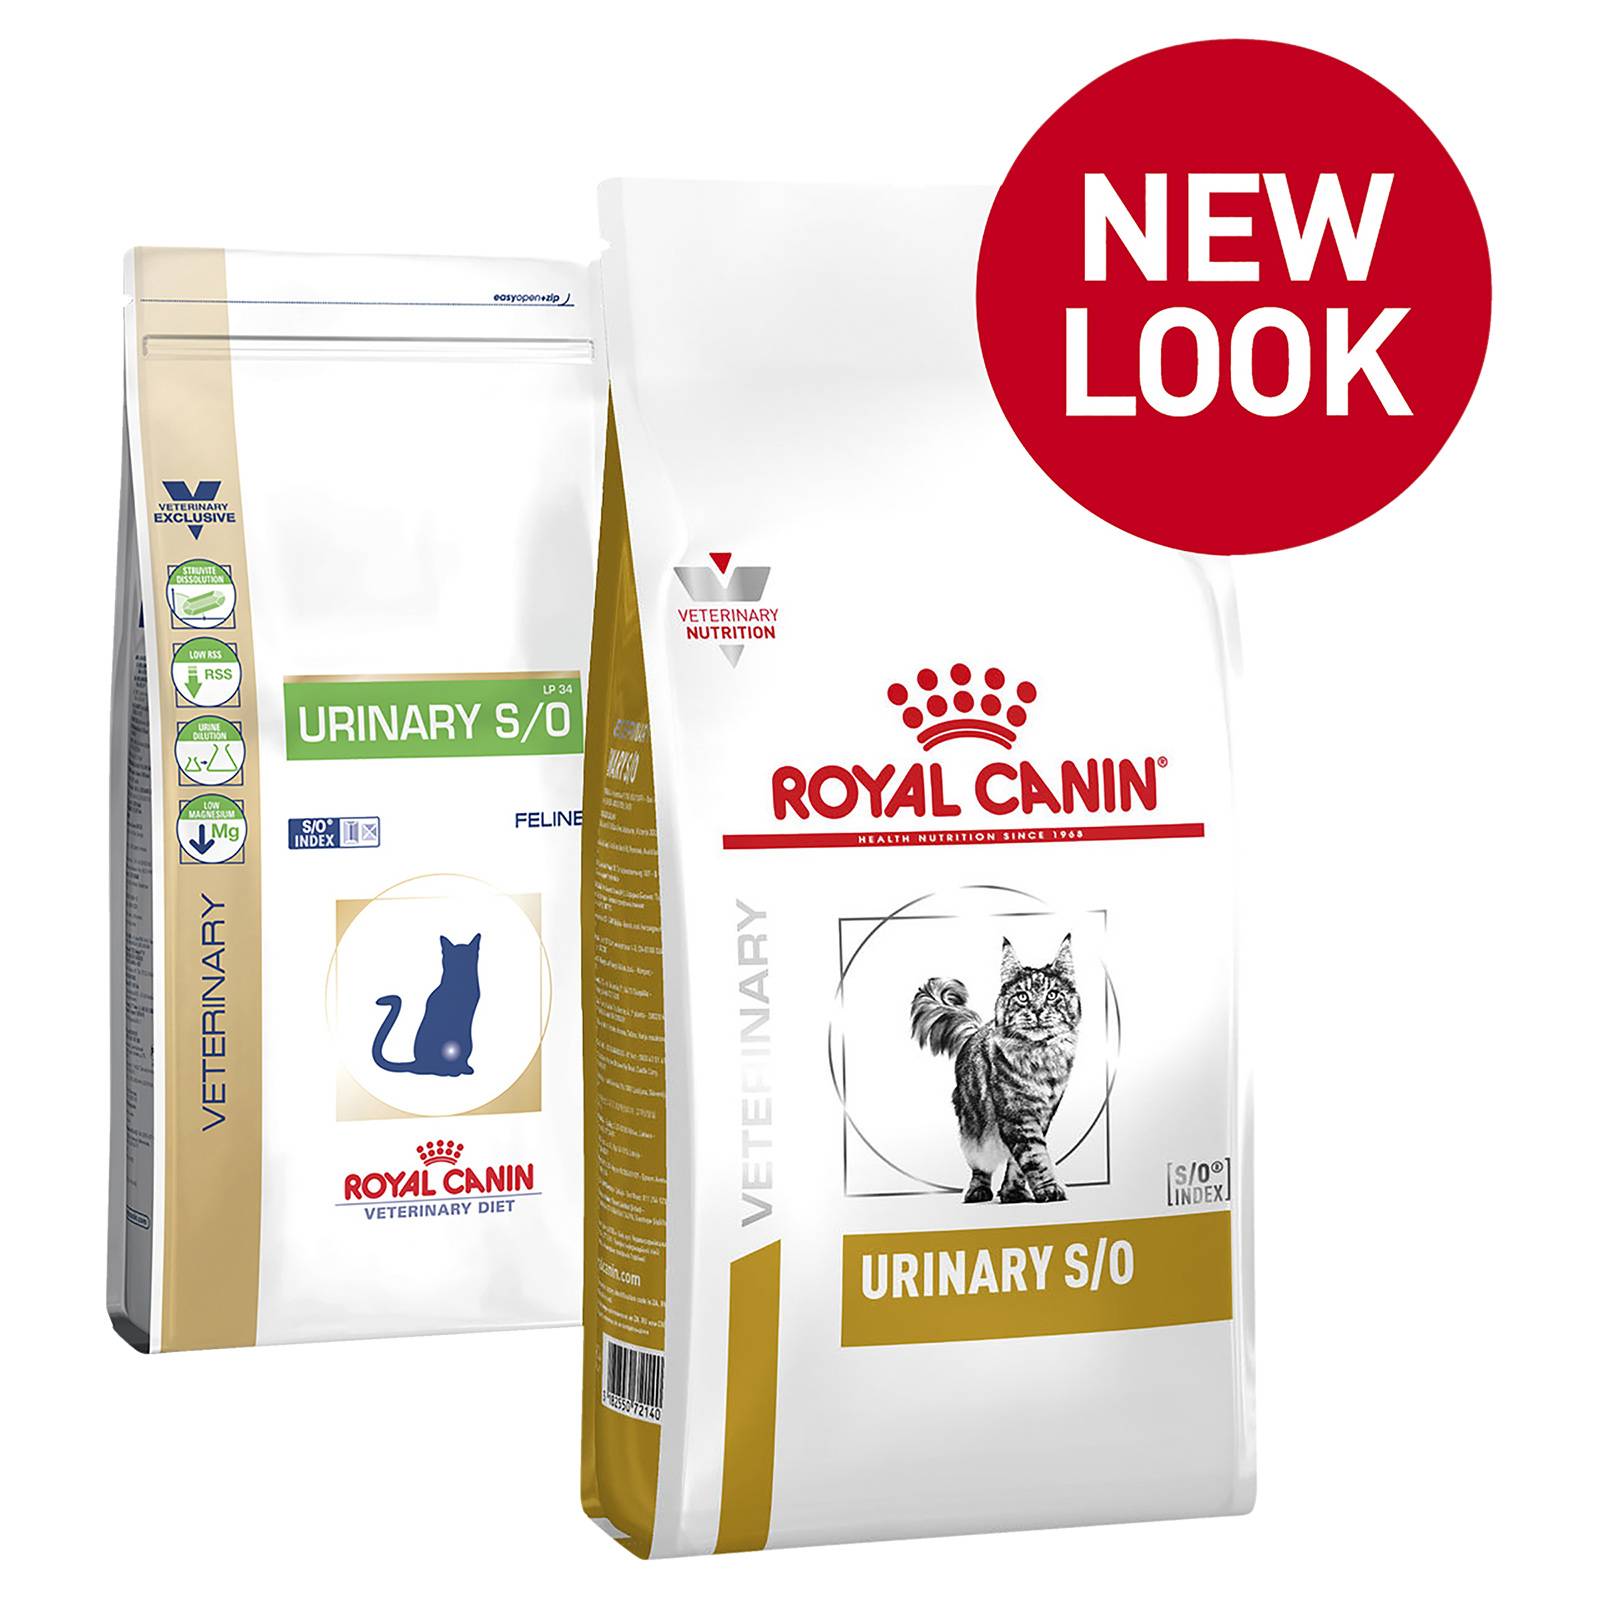 Royal canin urinary s/o диета для кошек при лечении и профилактике мочекаменной болезни